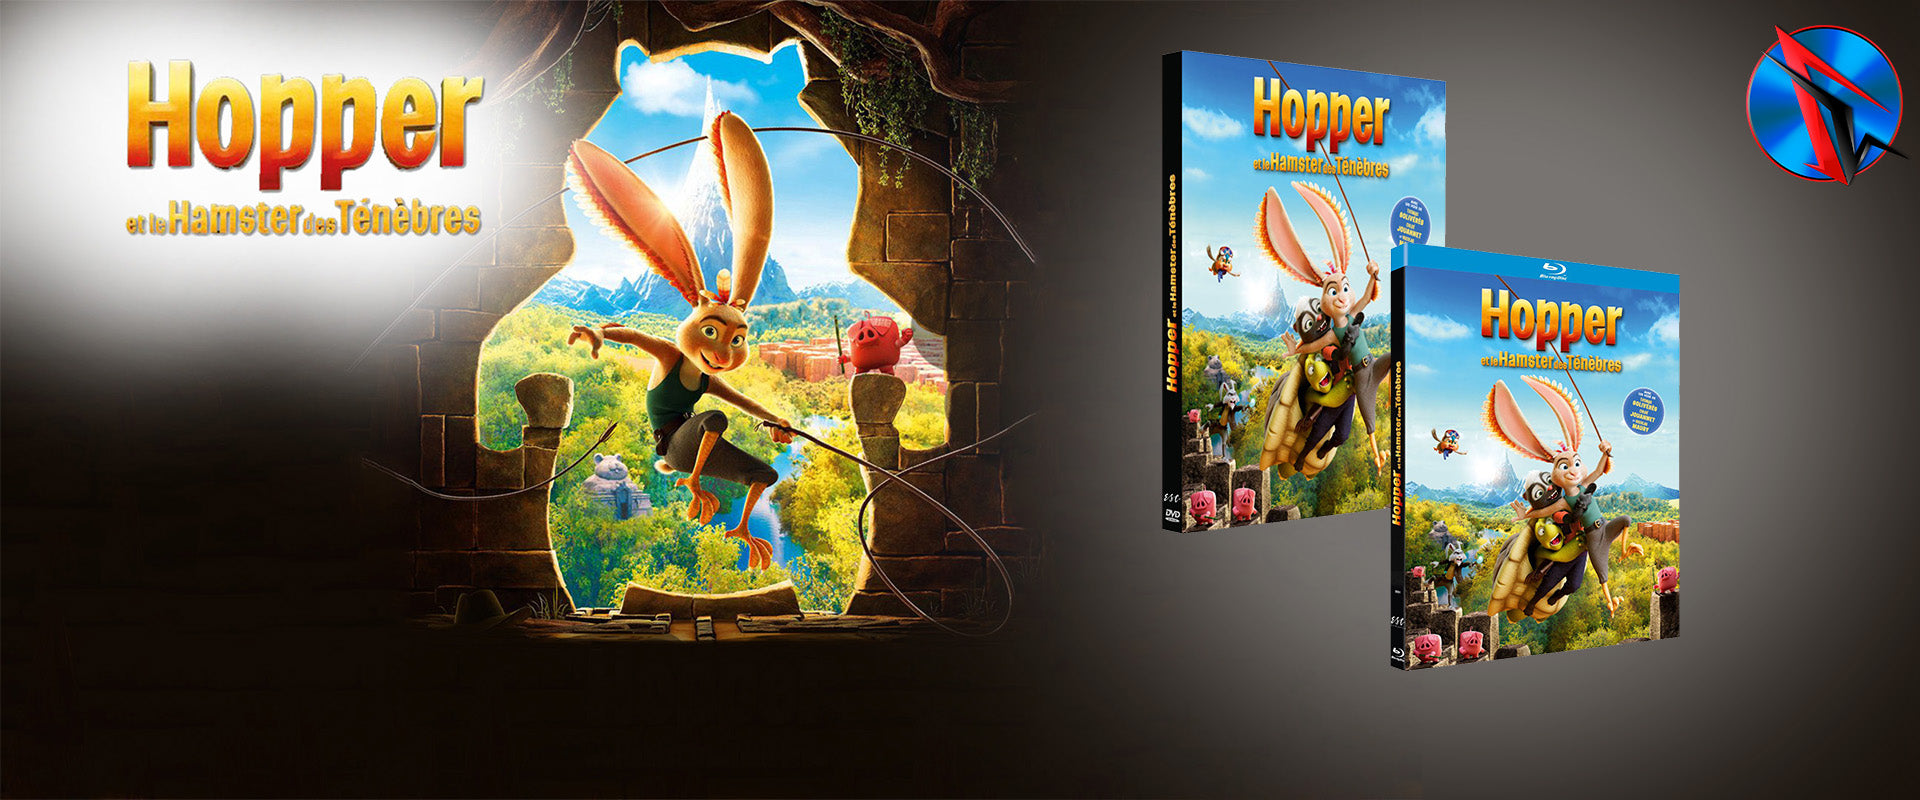 Hooper et le hamster des ténèbres en DVD et Blu-Ray